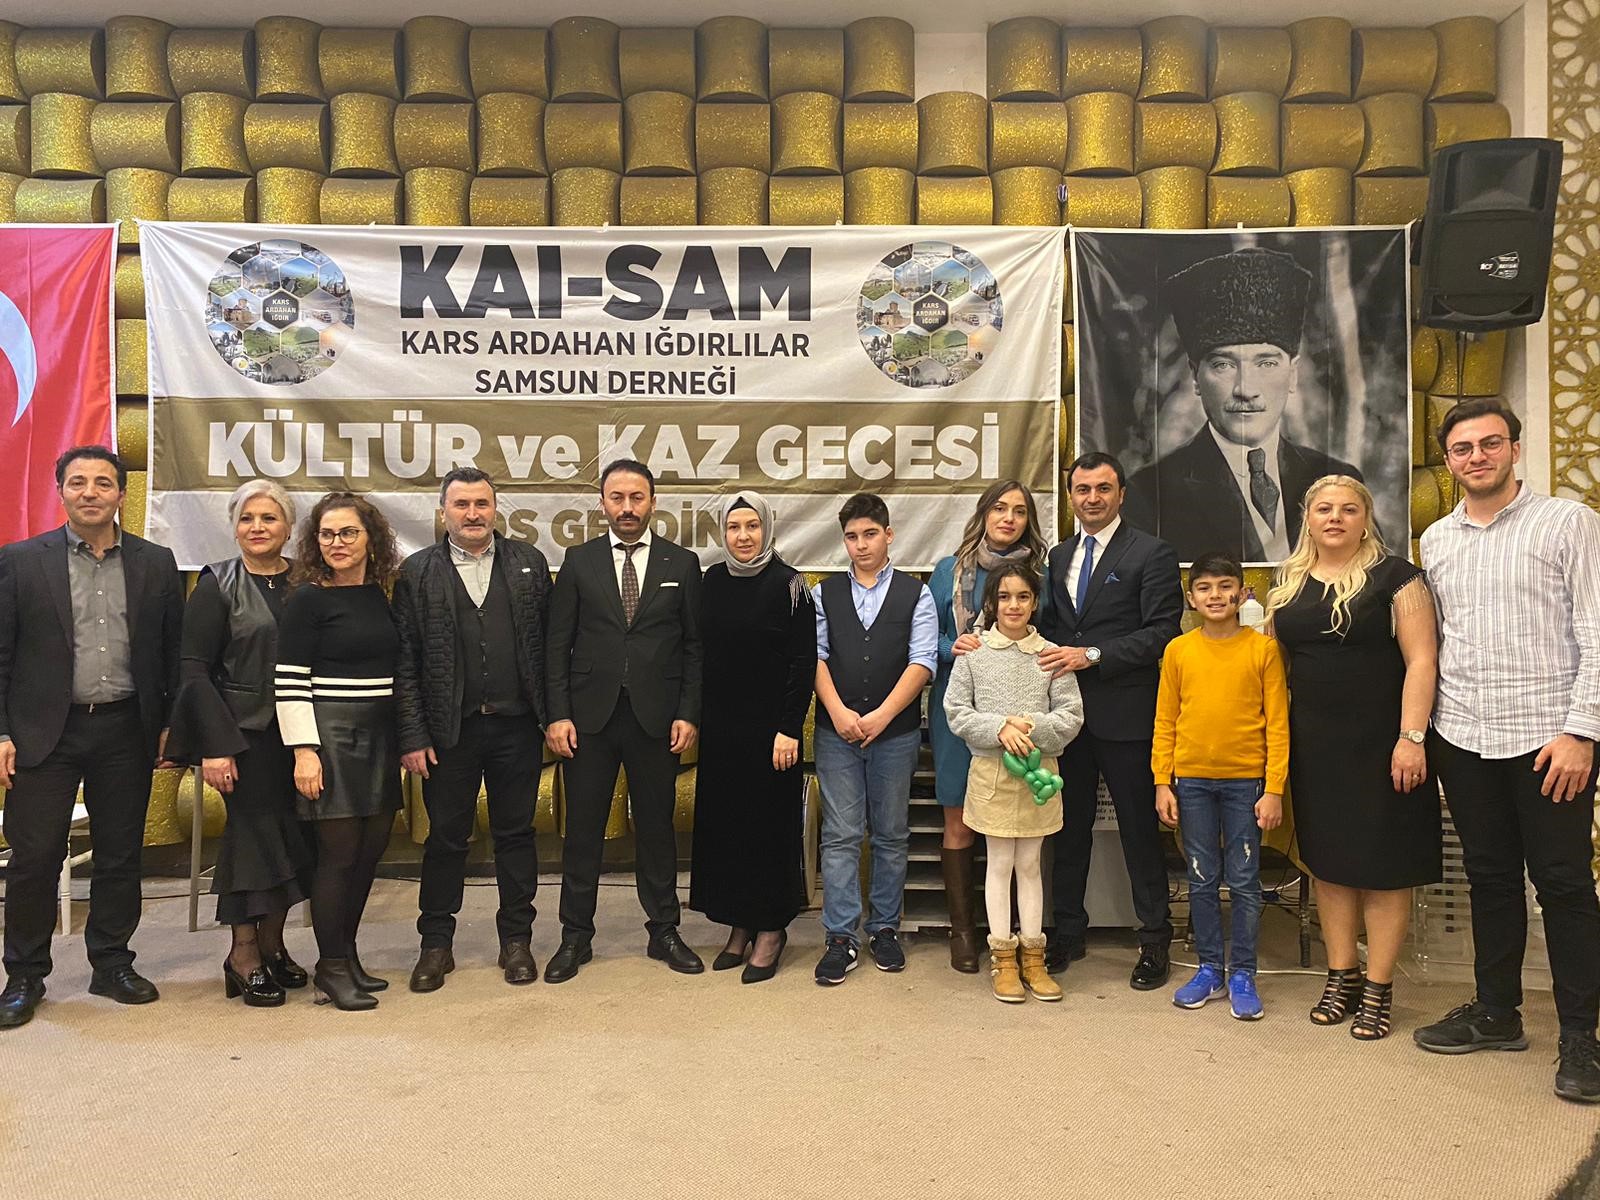 Samsun’da Kars, Ardahan, Iğdırlılar Derneği’nden Kültür Ve Kaz Gecesi Programı (3)